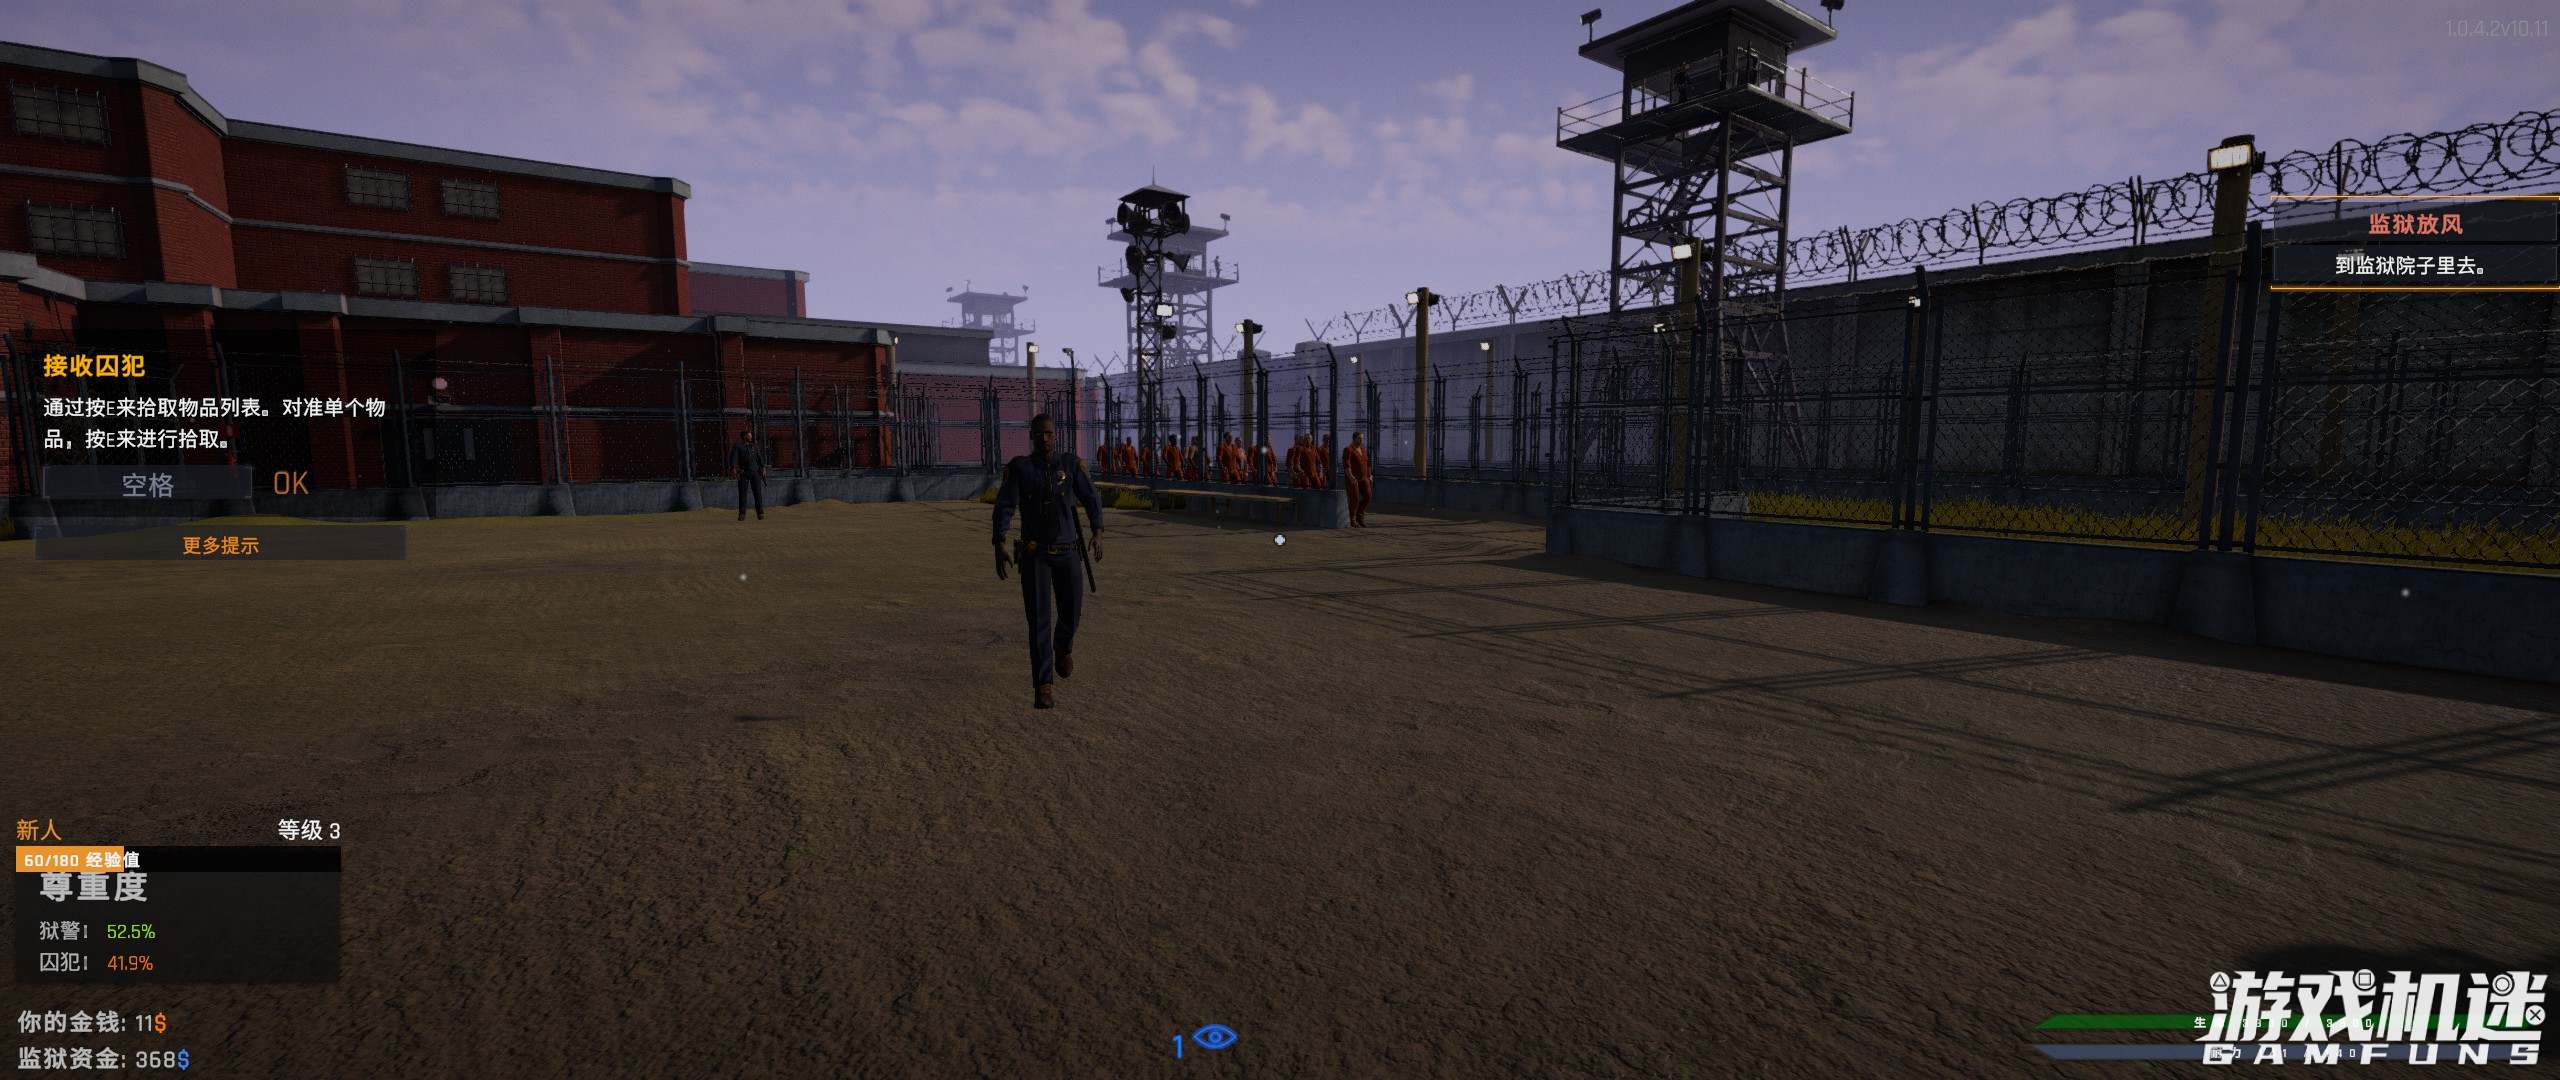 监狱模拟器游戏评测20211112004